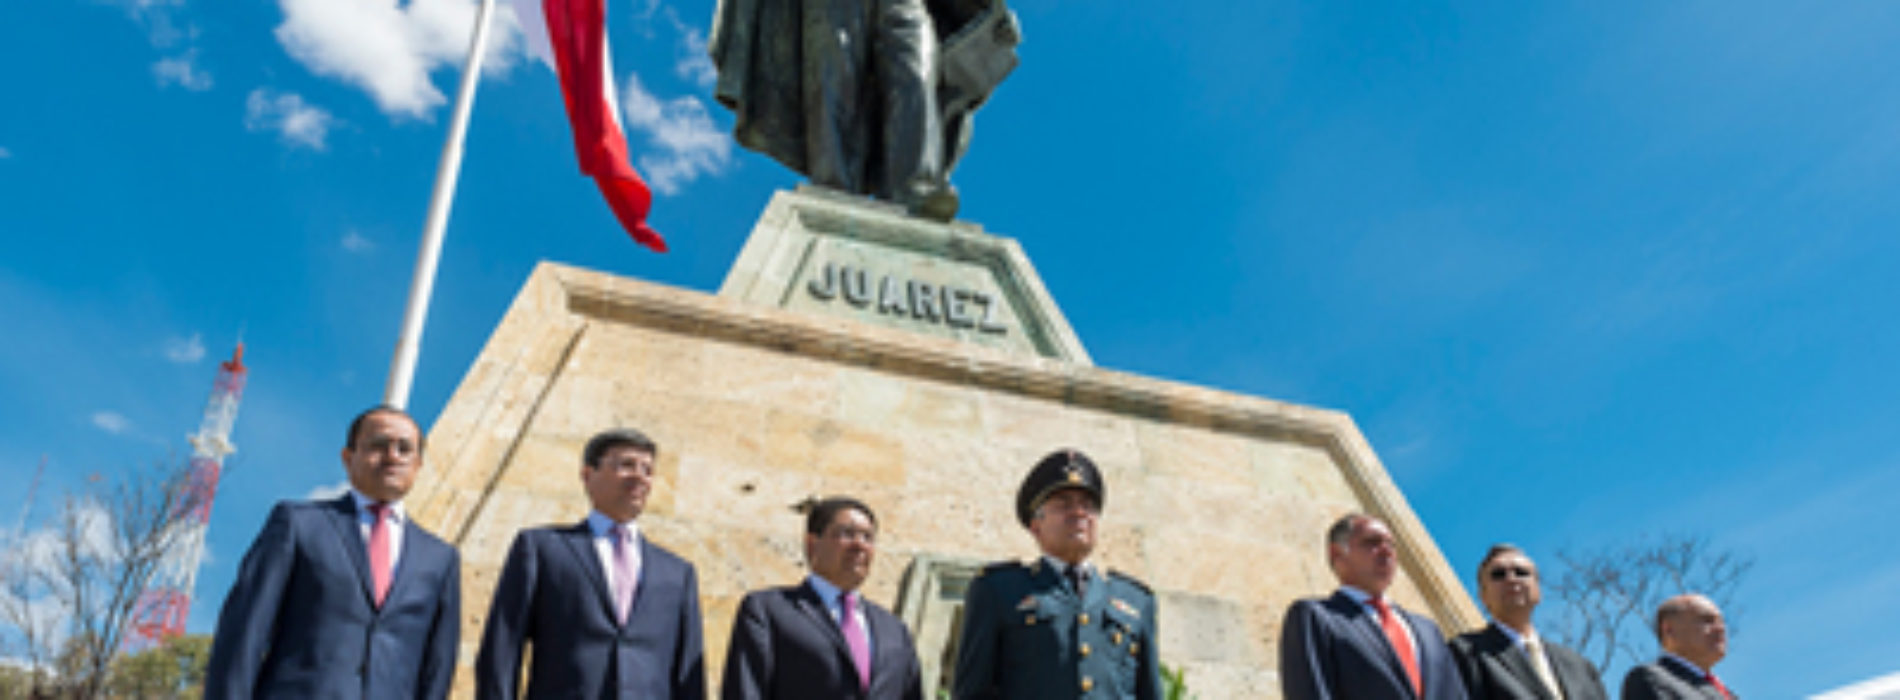 Convoca Gobierno de Oaxaca a consolidar el Estado de Derecho impulsado por el Benemérito de las Américas